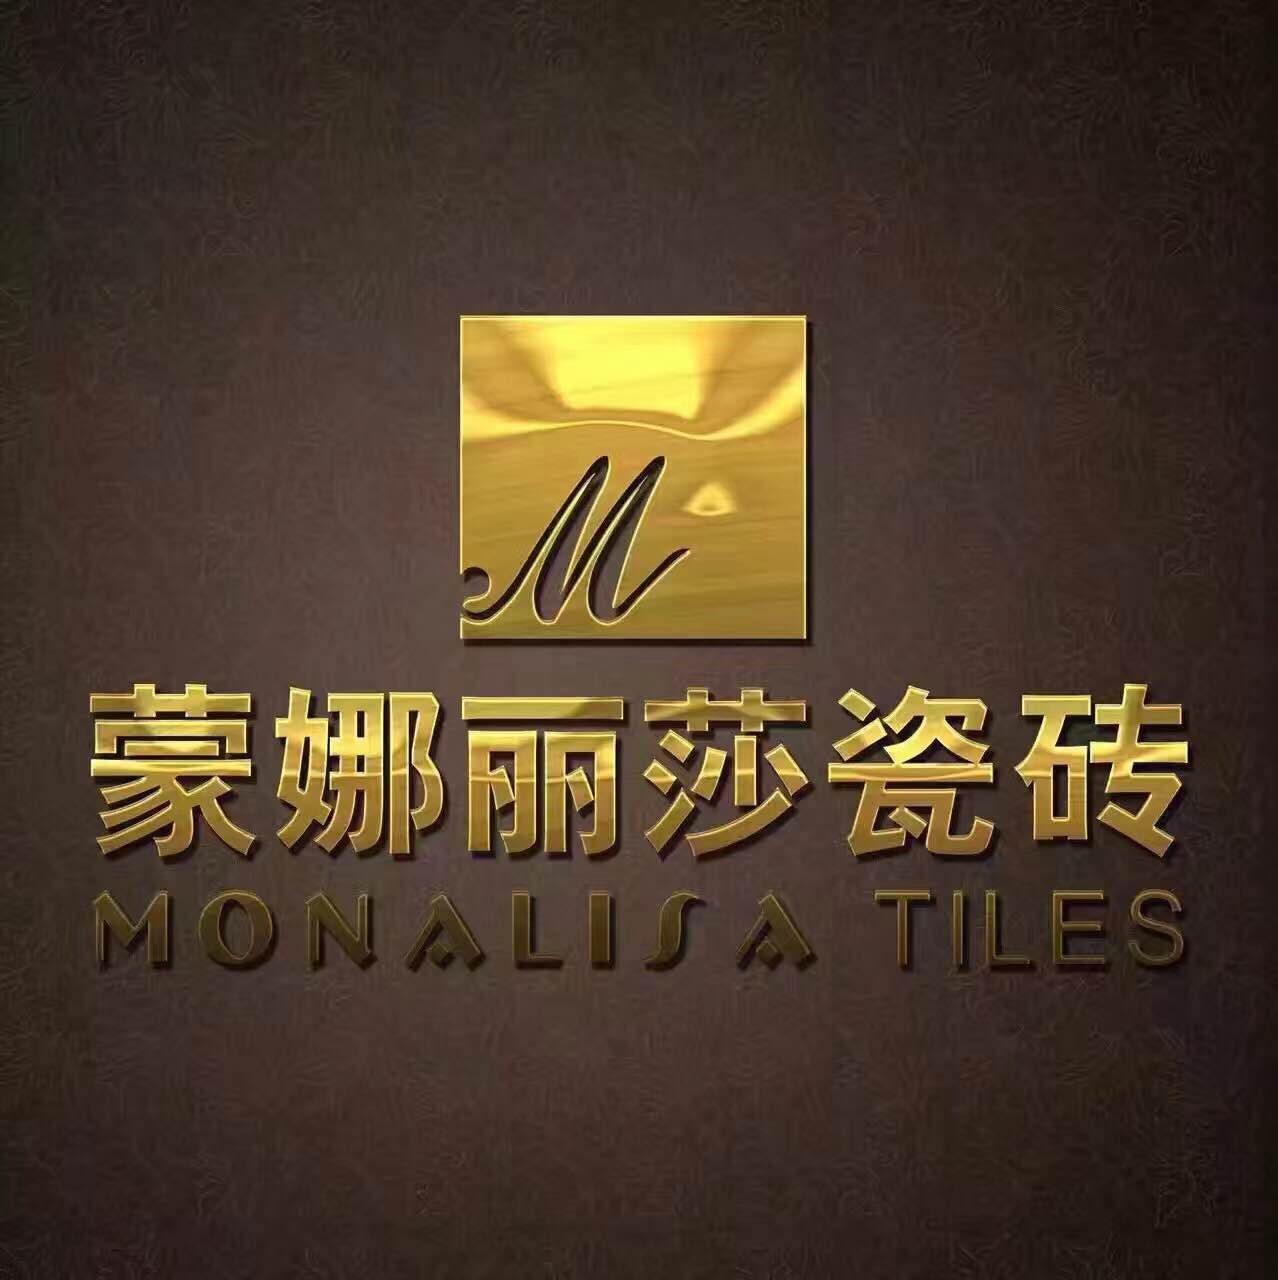 蒙娜丽莎瓷砖深圳旗舰店隆重开业